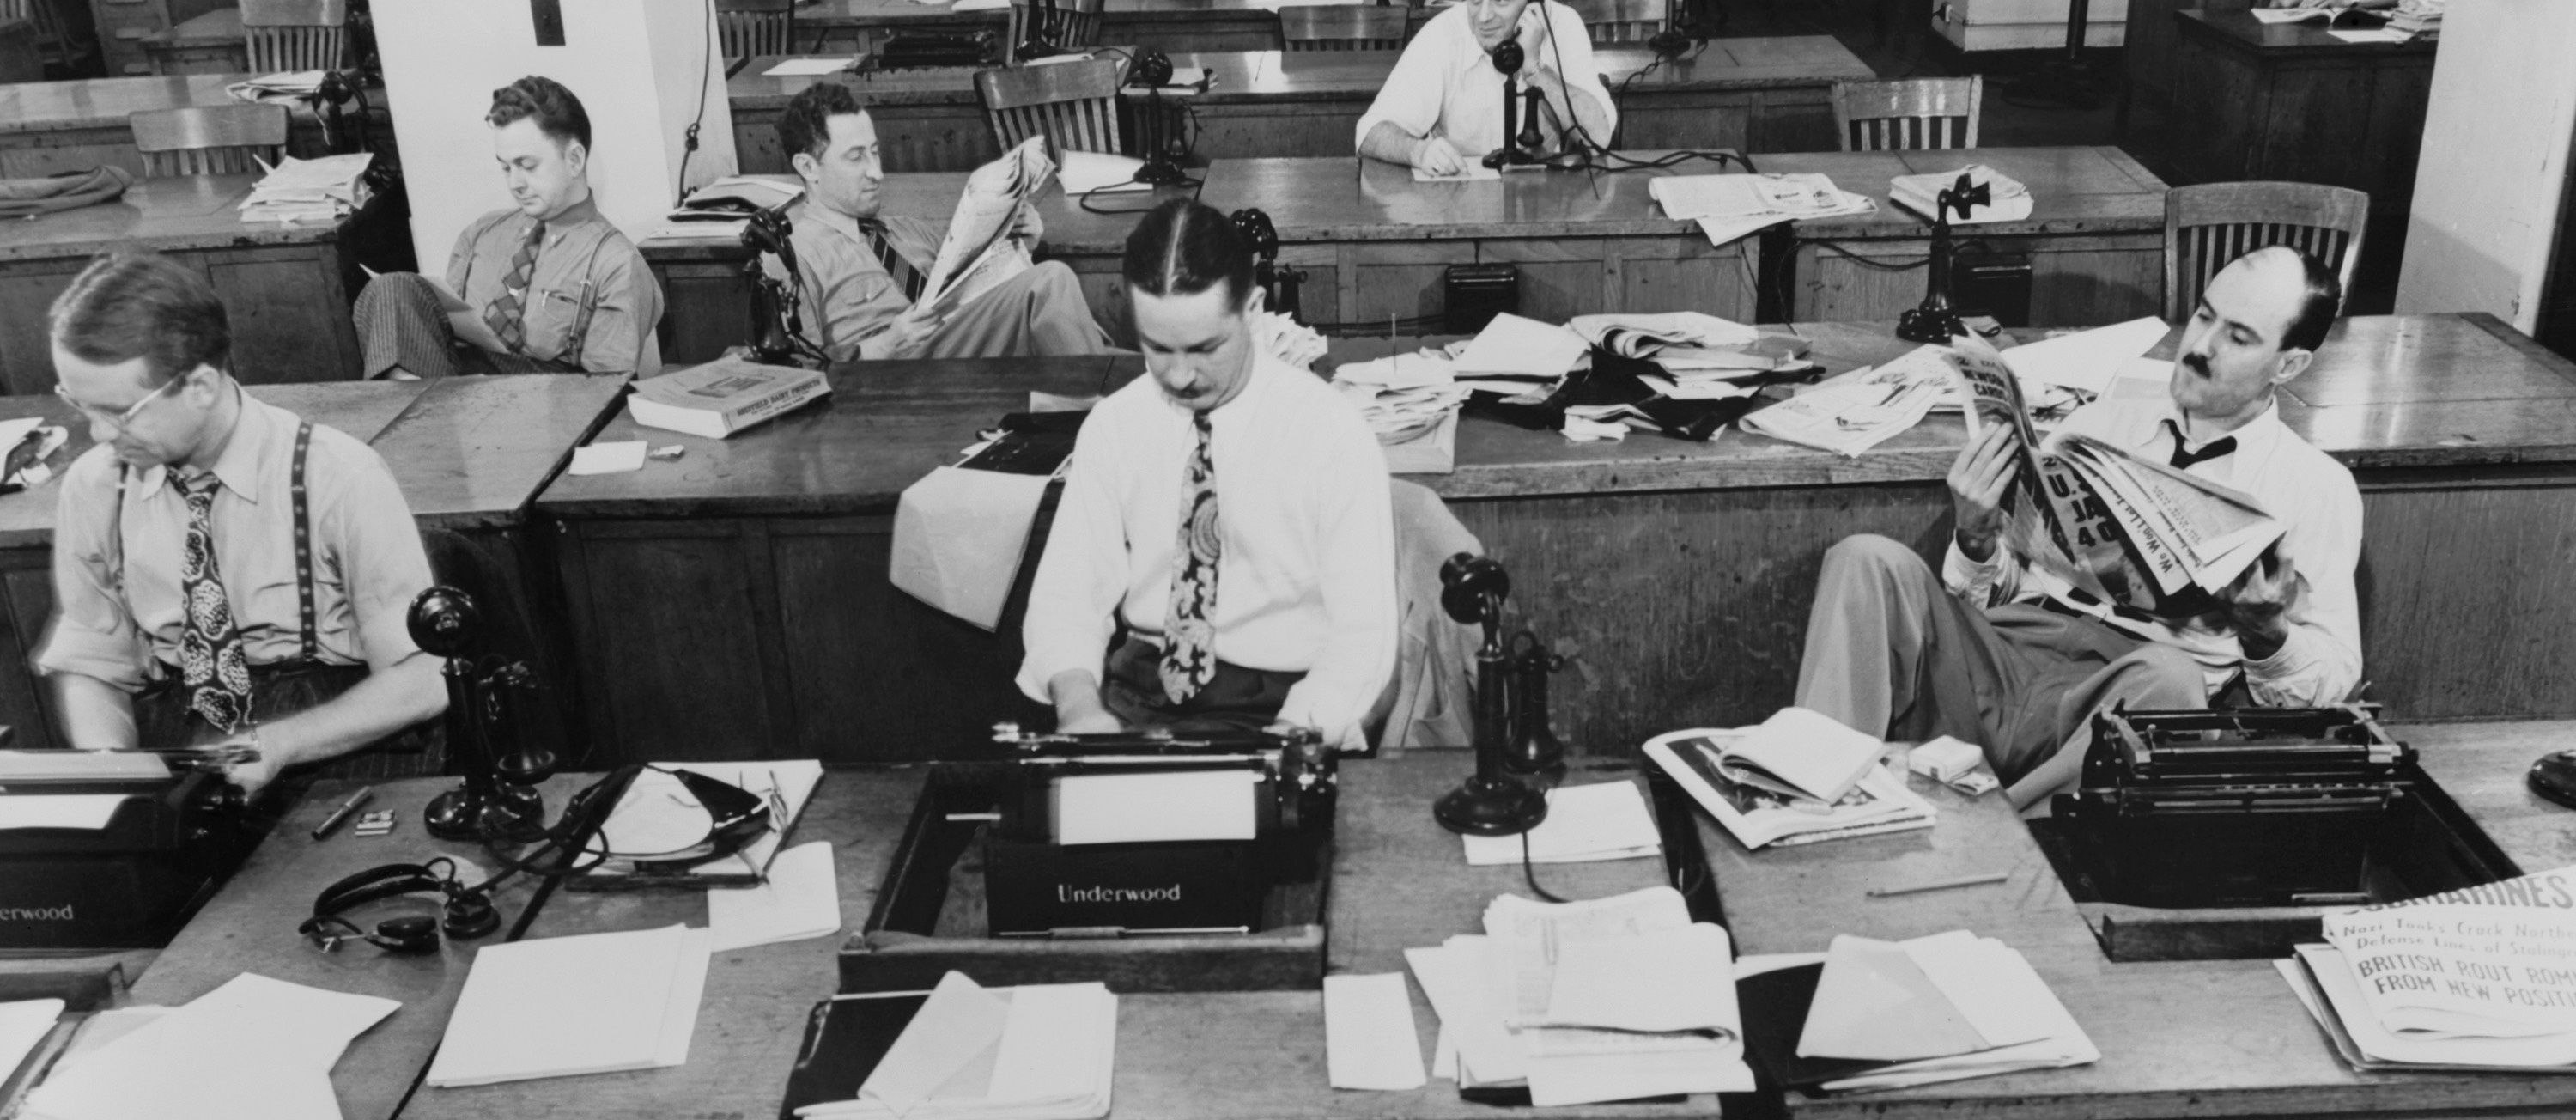 Goldene Zeiten? Der Newsroom der "New York Times" in einer Aufnahme aus 1942, als es noch recht entspannt zugegangen sein scheint